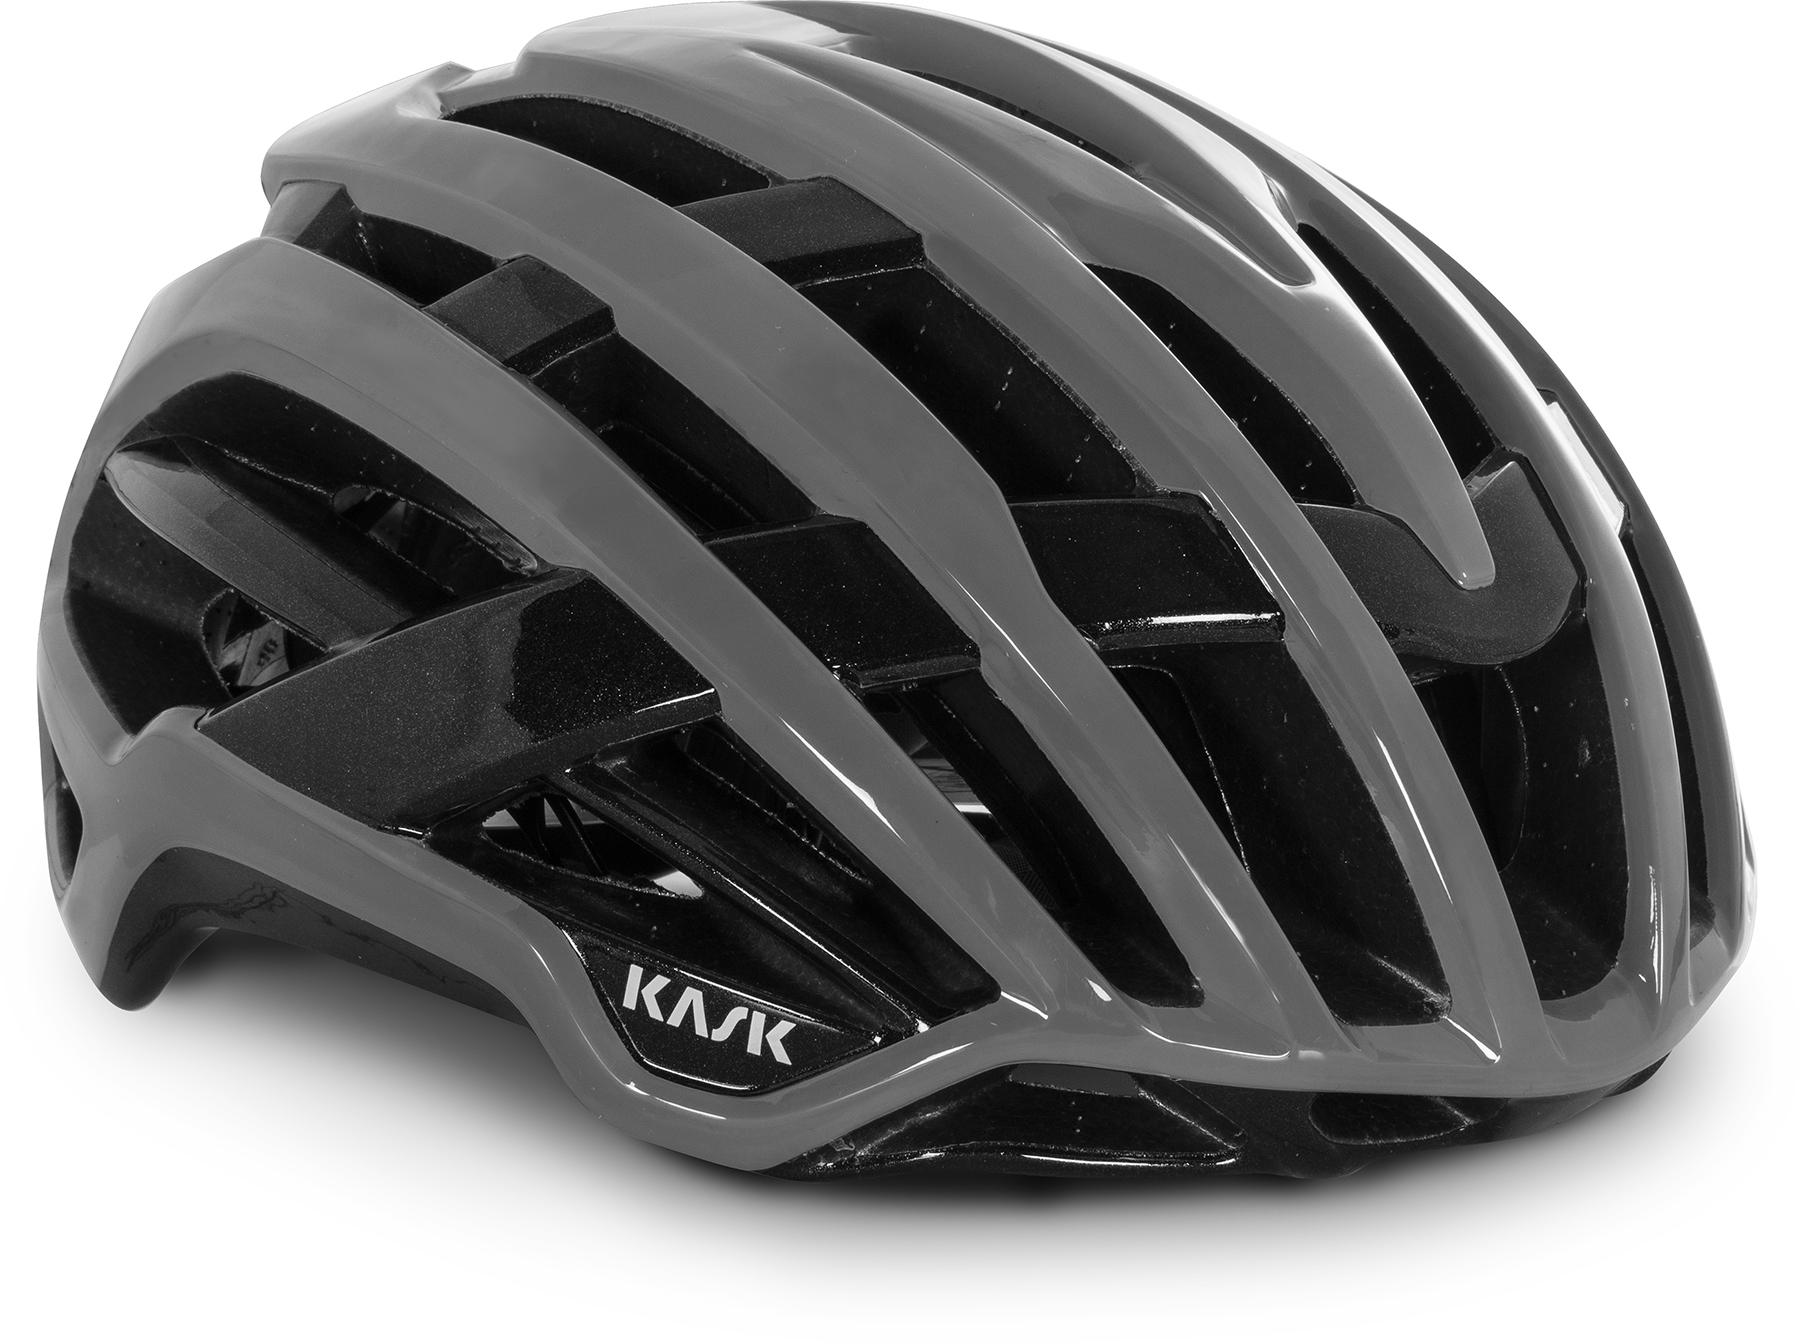 Kask Valegro Road Cycling Helmet (wg11) - Ash